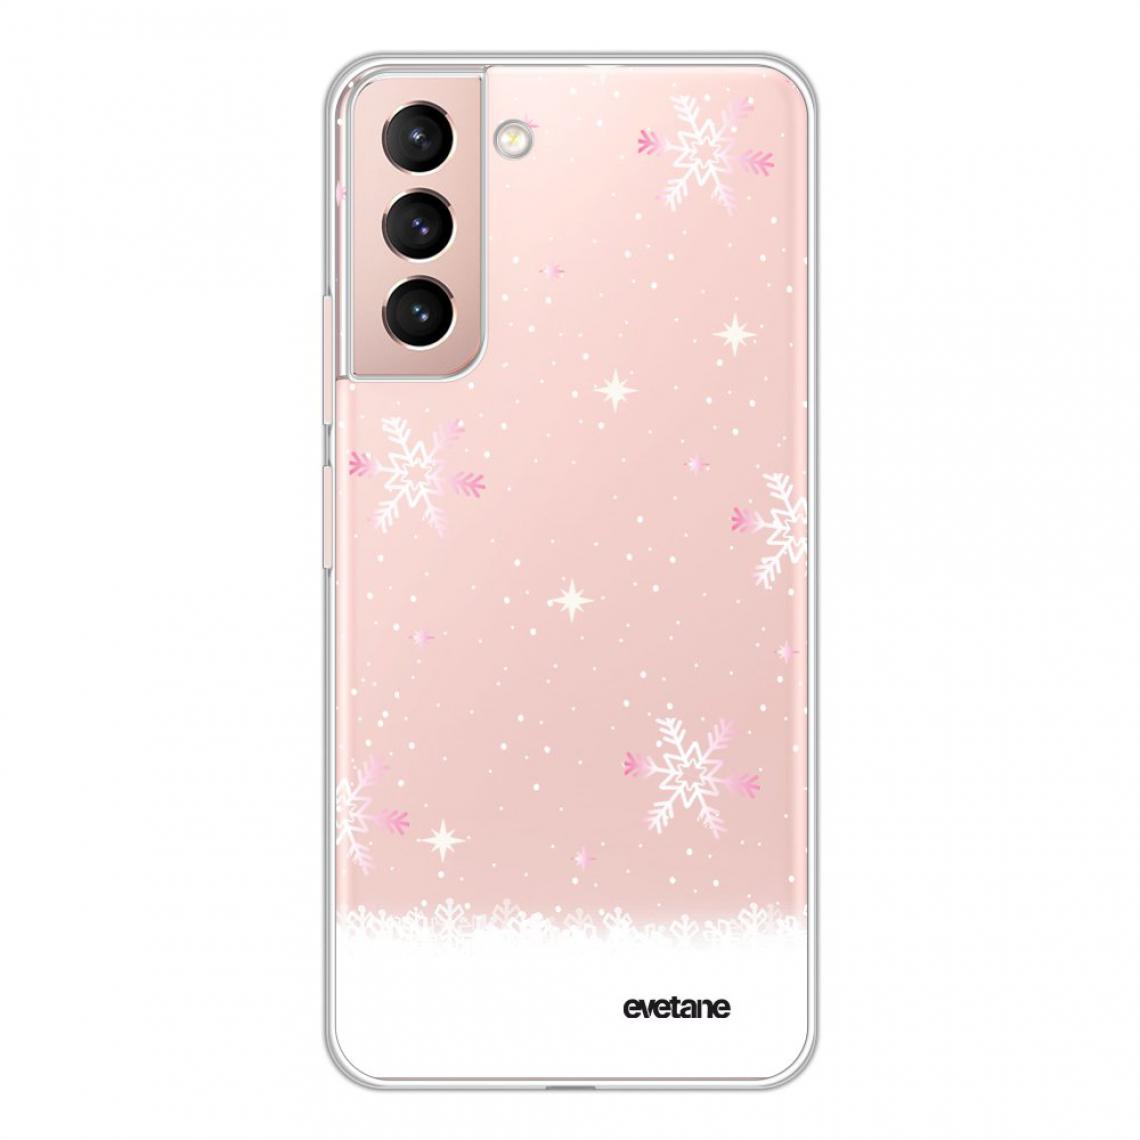 Evetane - Coque Samsung Galaxy S21 Plus 5G 360 intégrale avant arrière transparente - Coque, étui smartphone